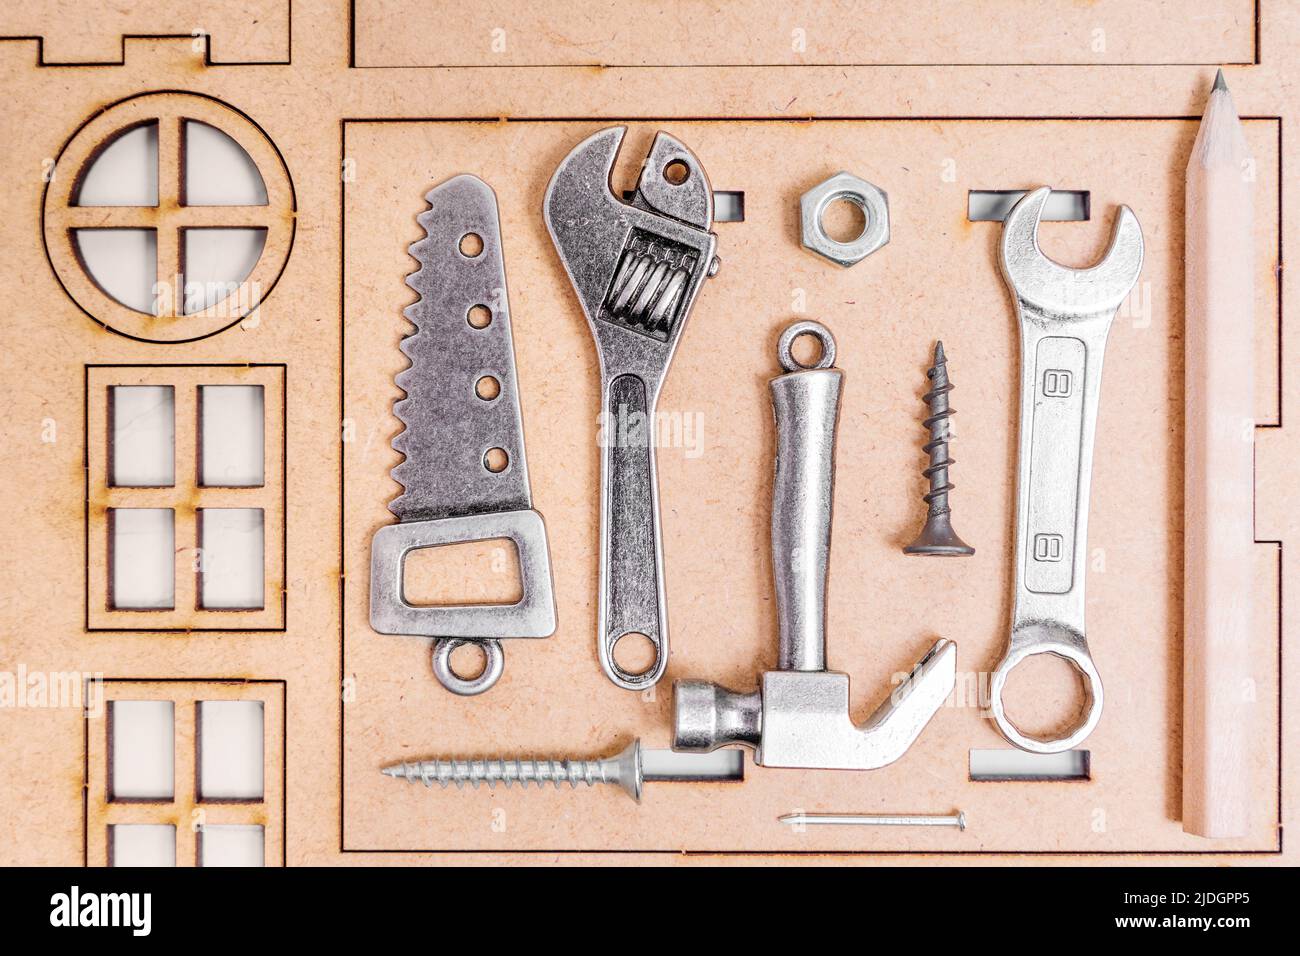 Set von Miniatur-Tools und Befestigungselementen, um ein Haus auf einem hölzernen Haus Modell-Kit angeordnet zu bauen. Stockfoto